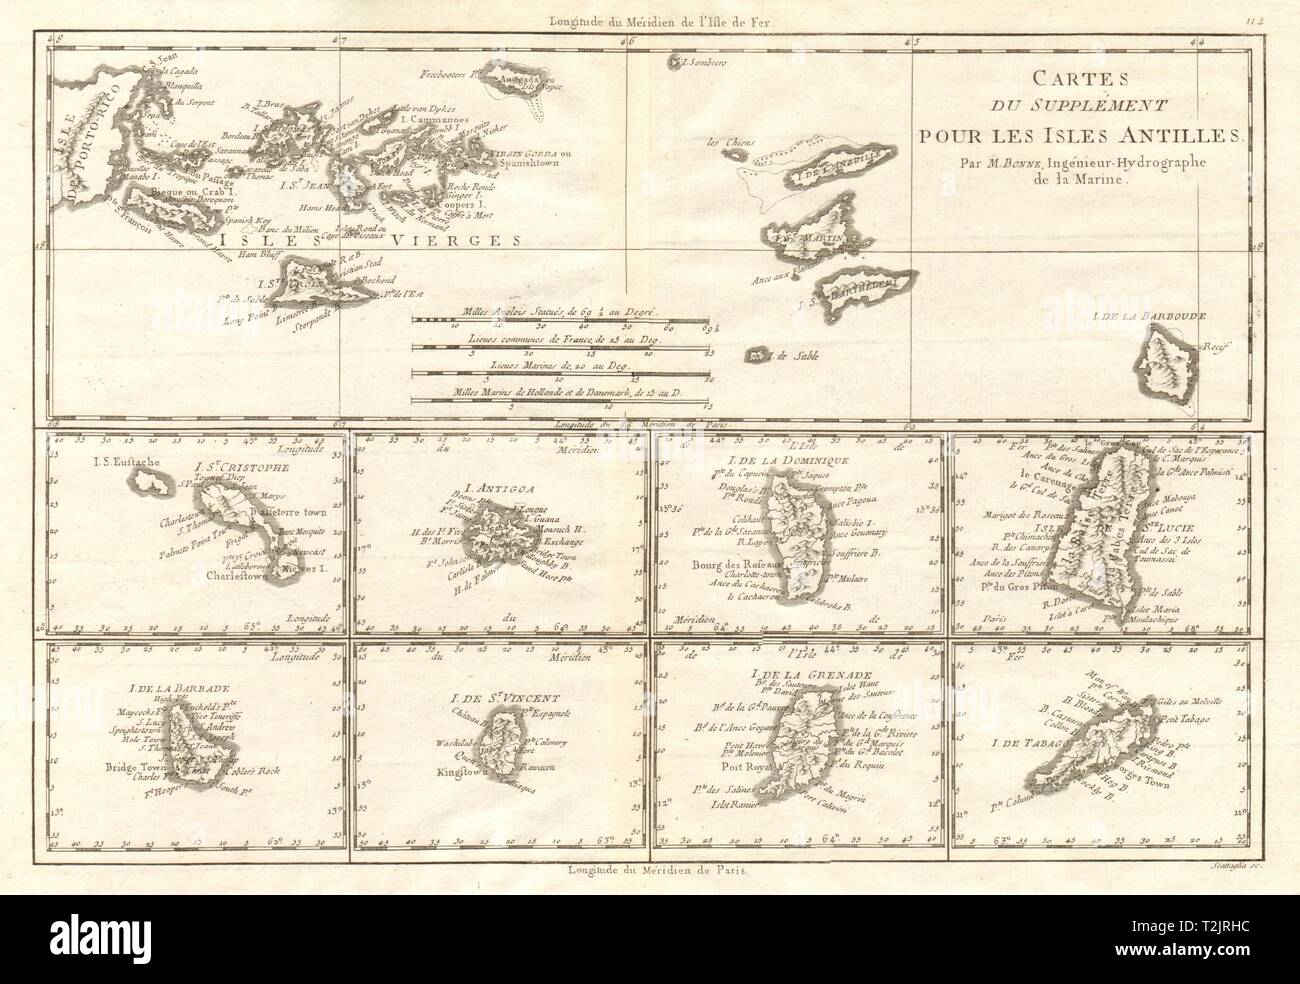 Cartes de Supplément pour les Isles Antillen. Westindischen Inseln BONNE 1790 Karte Stockfoto